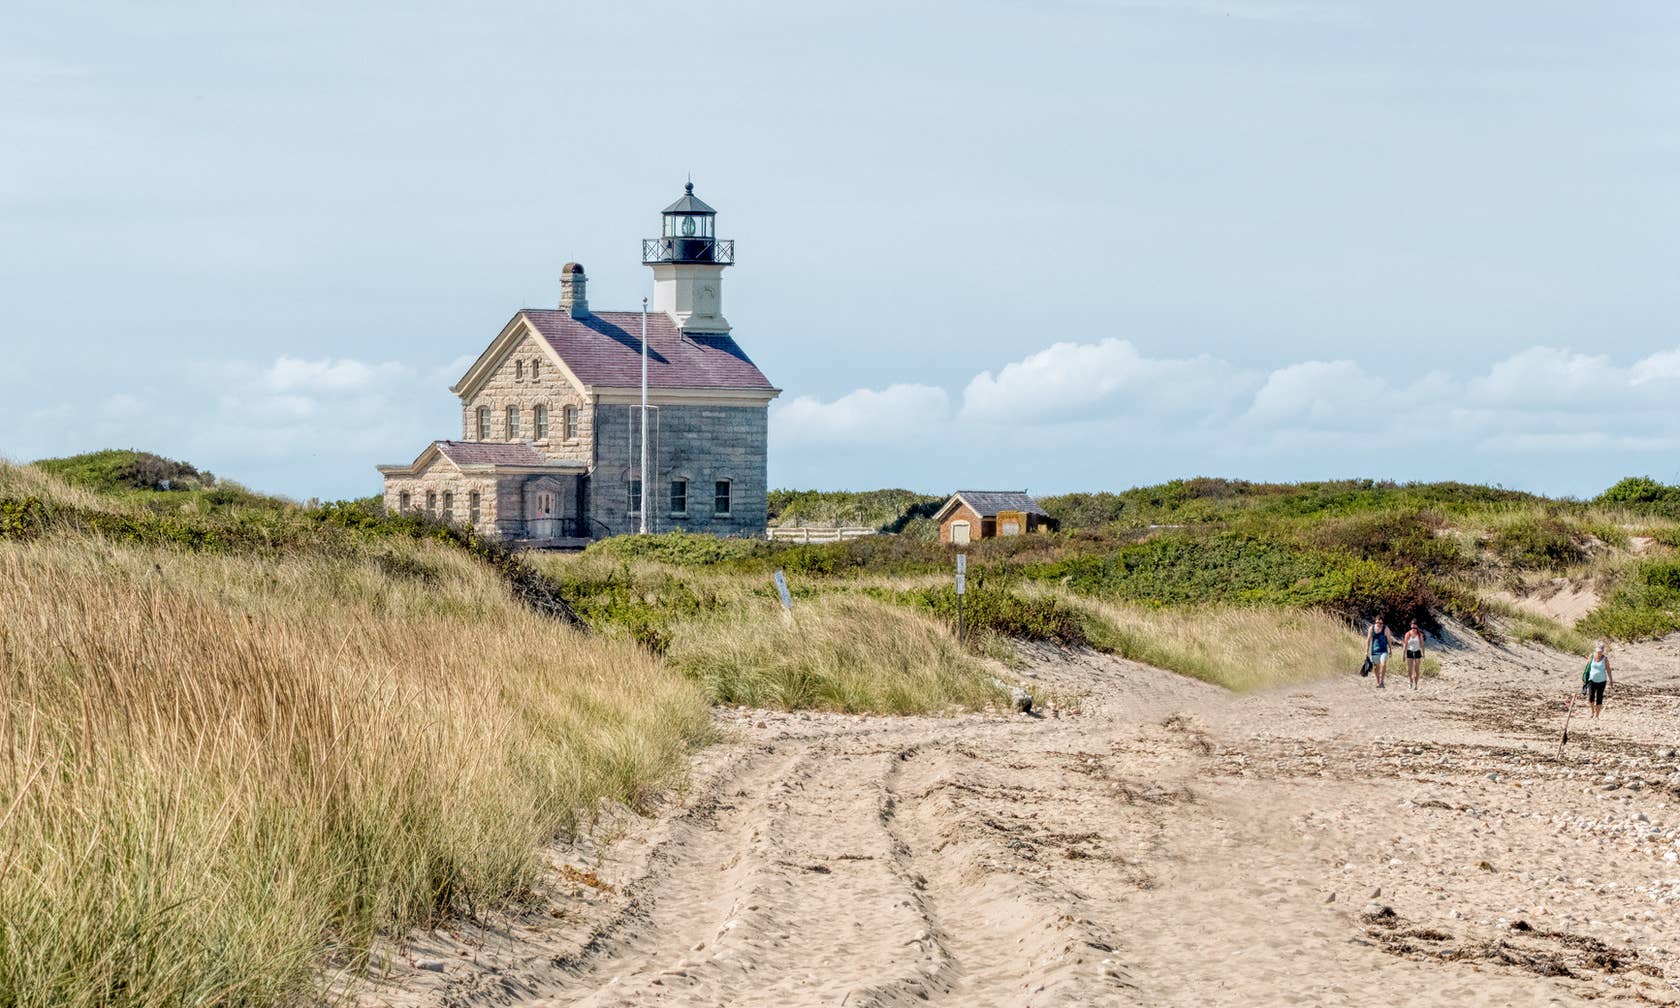 Rhode Island beach vacation rentals